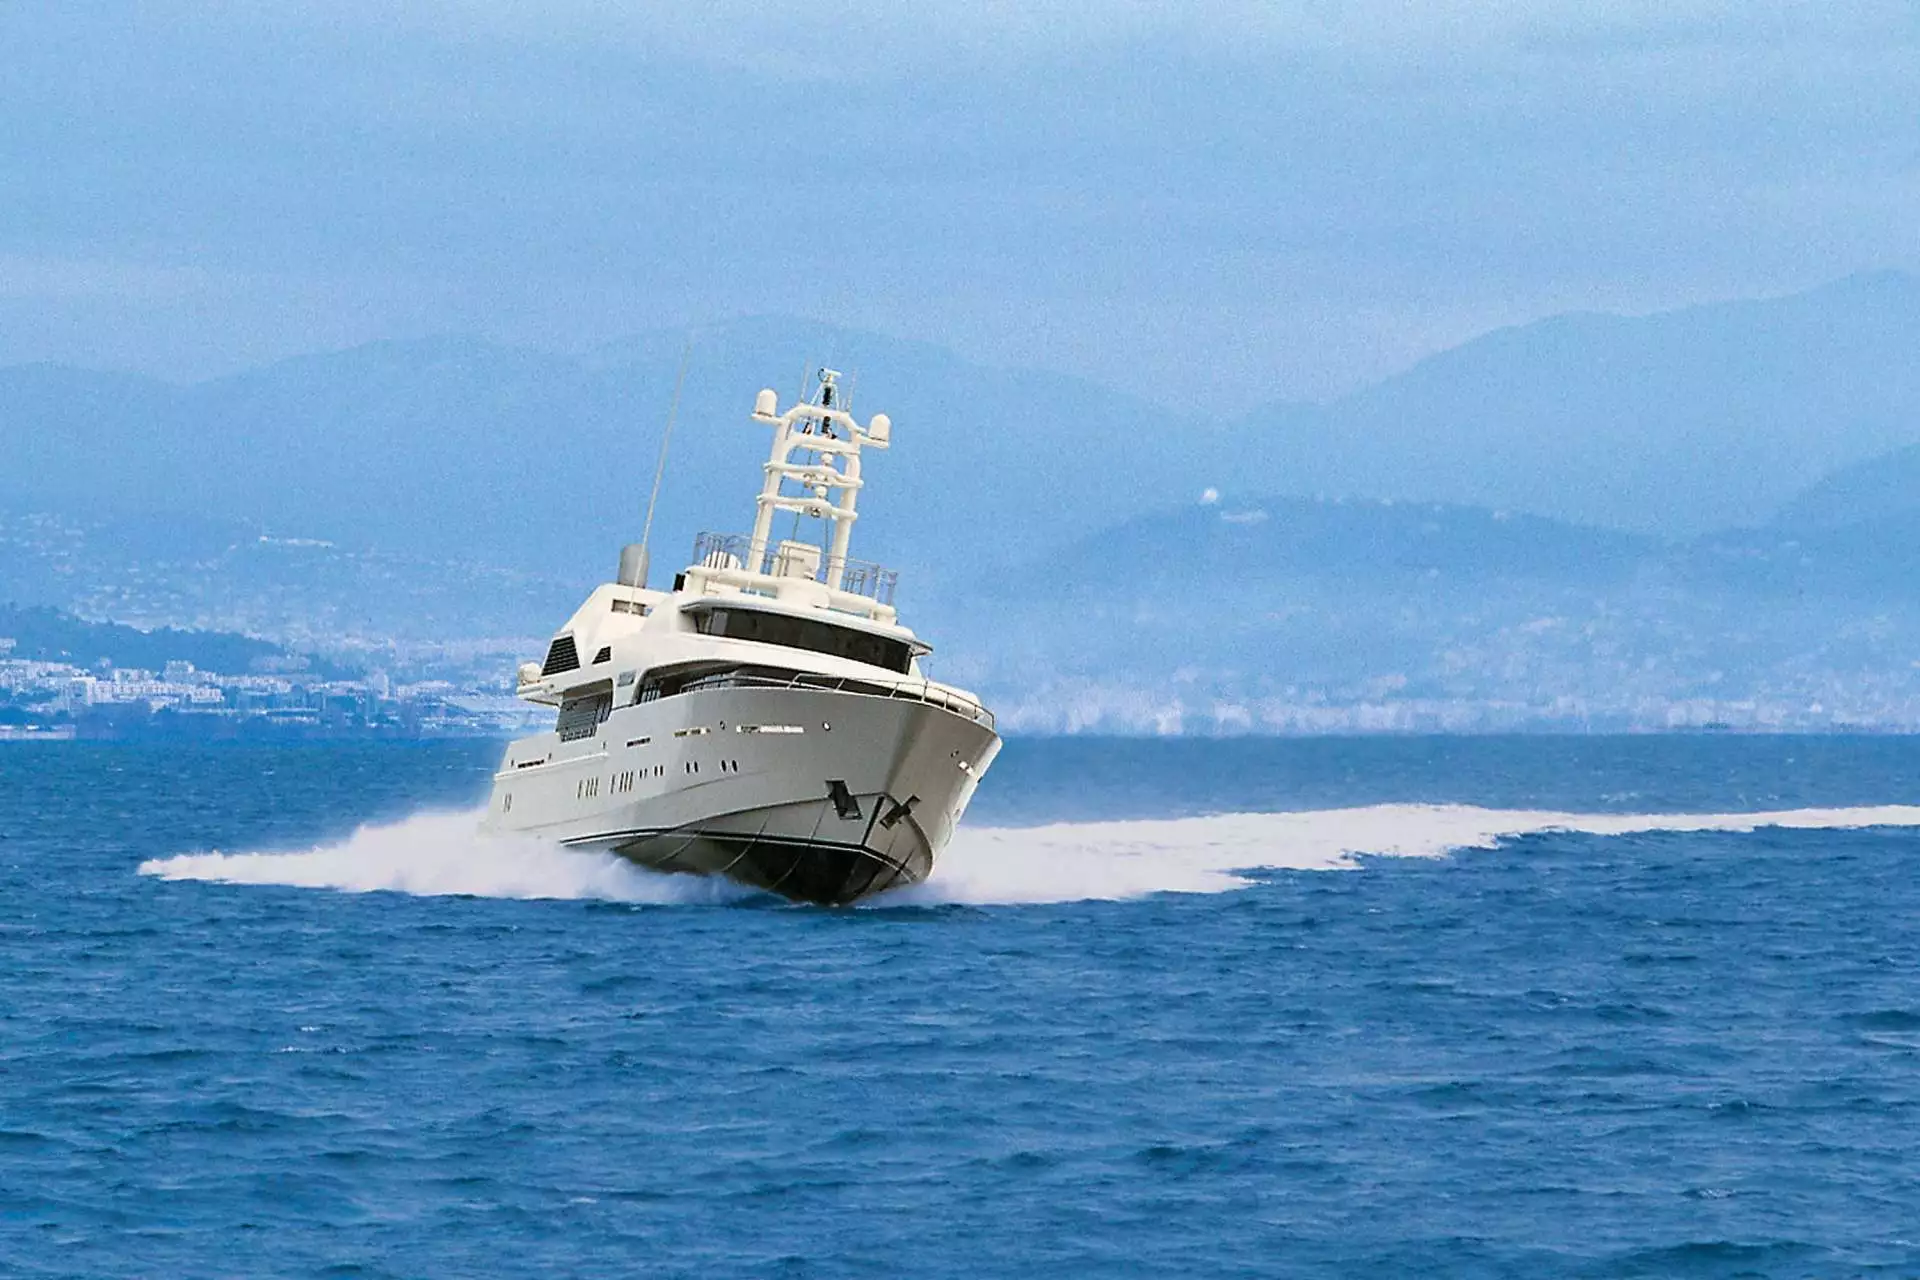 SUSSURRO Yacht • Irina Malandina $25M Superyacht